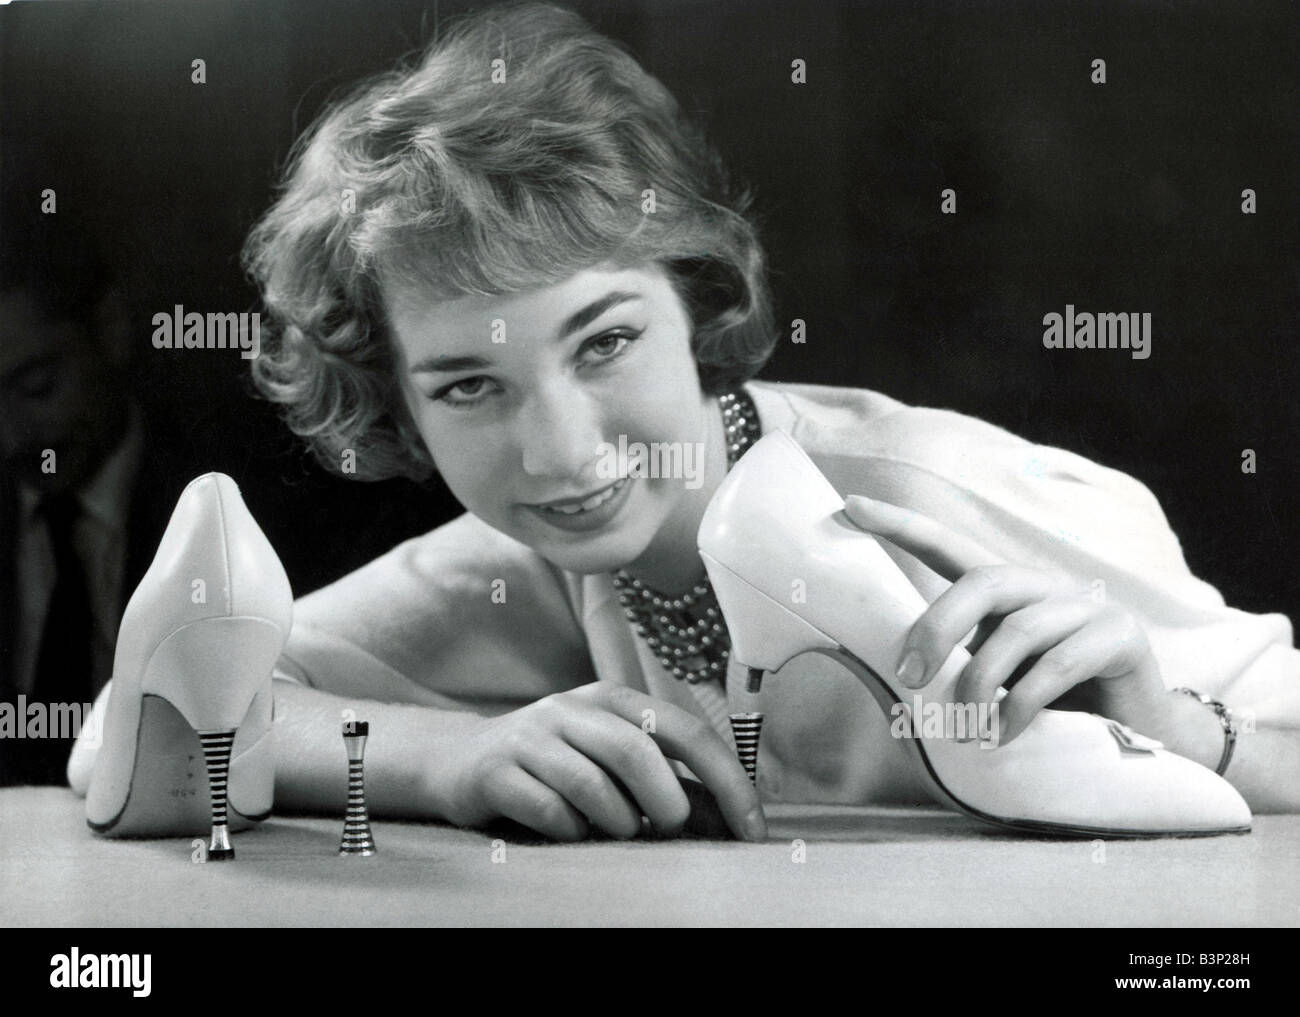 Eine Modell mit ein paar neuen Schuhen mit hohen Absätzen die Stahl Fersen, anschrauben und ab 1959 Schuhmode Schuhe Erfindung Erfindungen Frauen Frau 1950er Jahre Spiegel Stockfoto